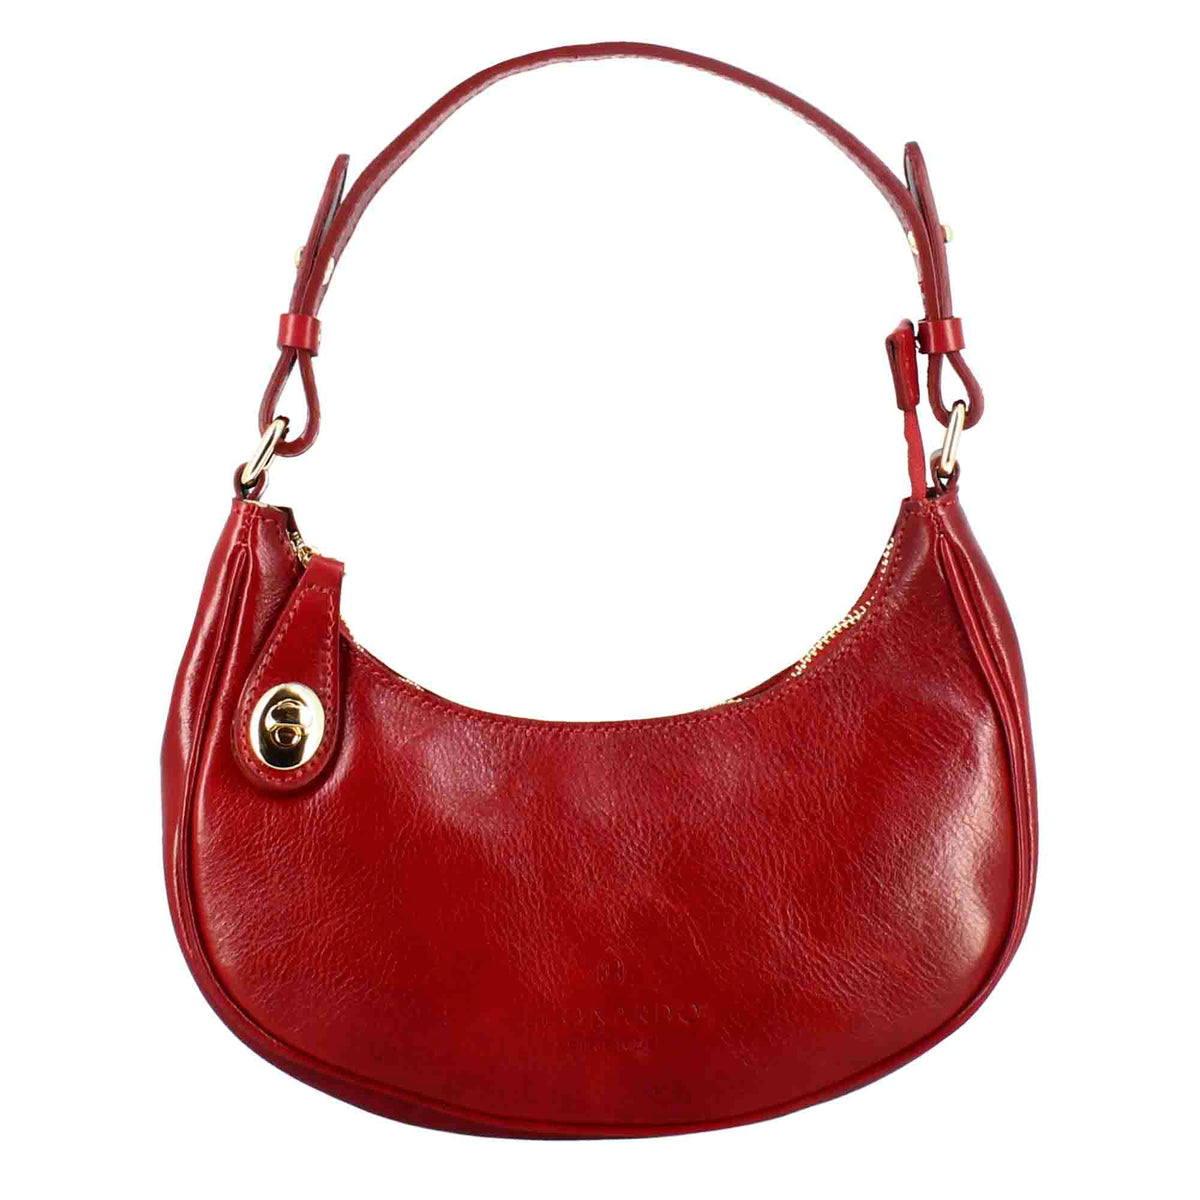 Jane shoulder bag in red leather with removable shoulder strap